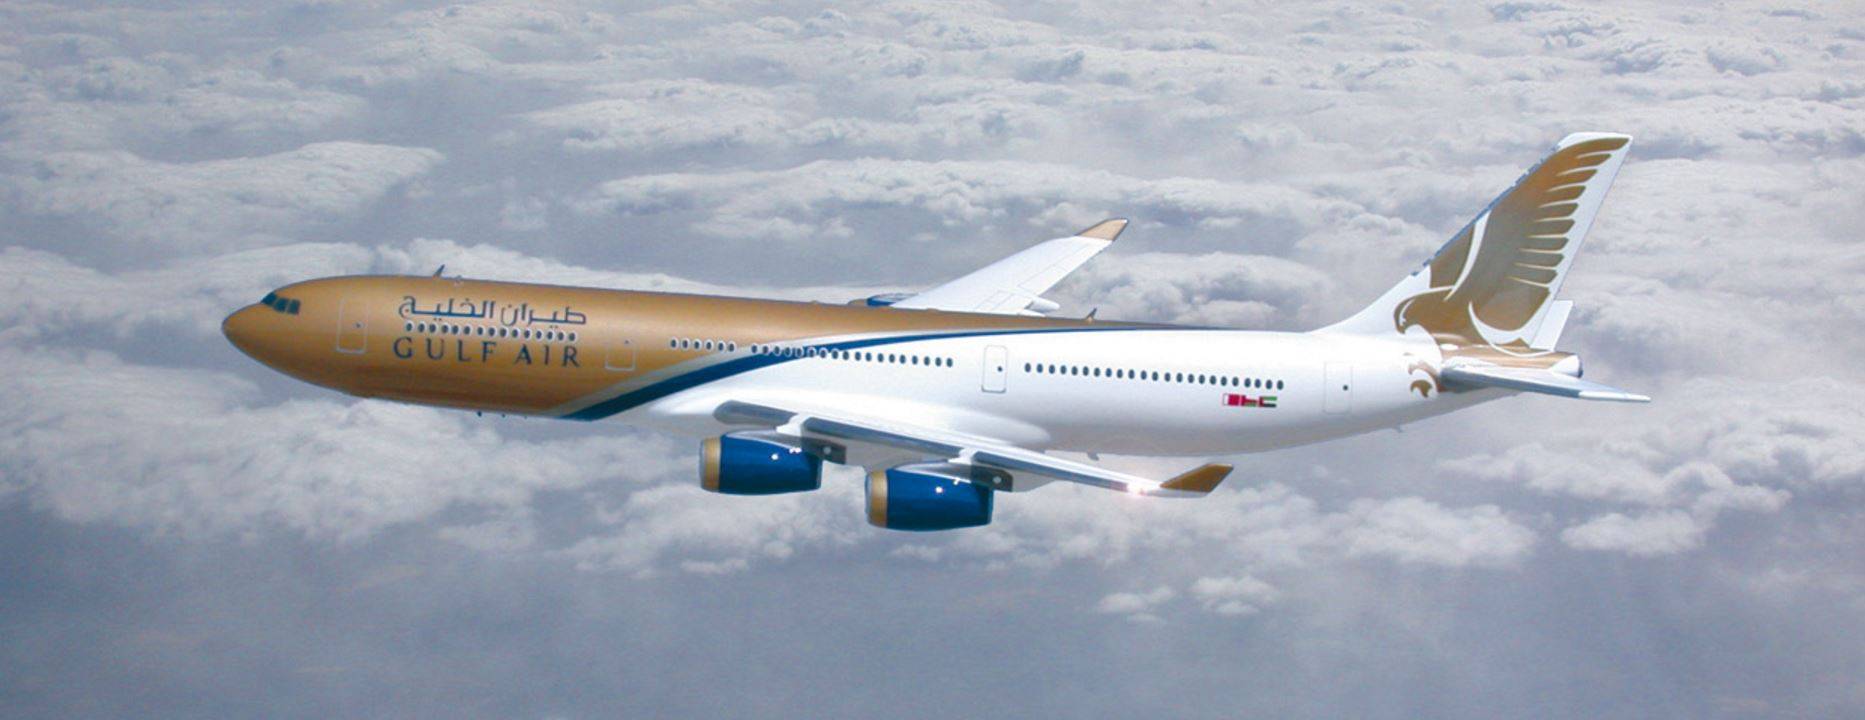 Национальная флагманская авиакомпания королевства Бахрейн «Gulf air»